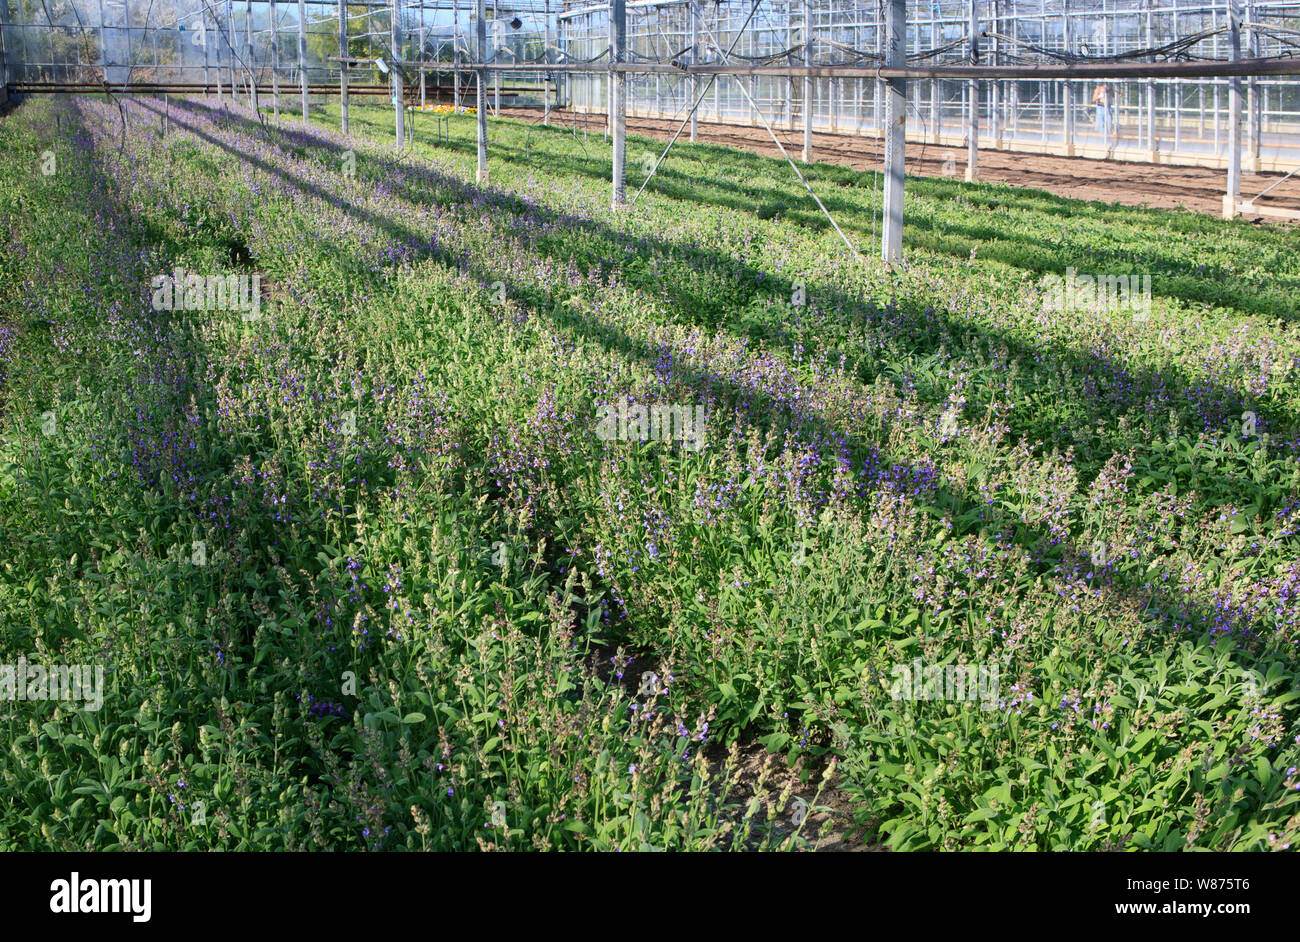 Lavendel Pflanzen wachsen in einem kommerziellen Gewächshaus Stockfoto